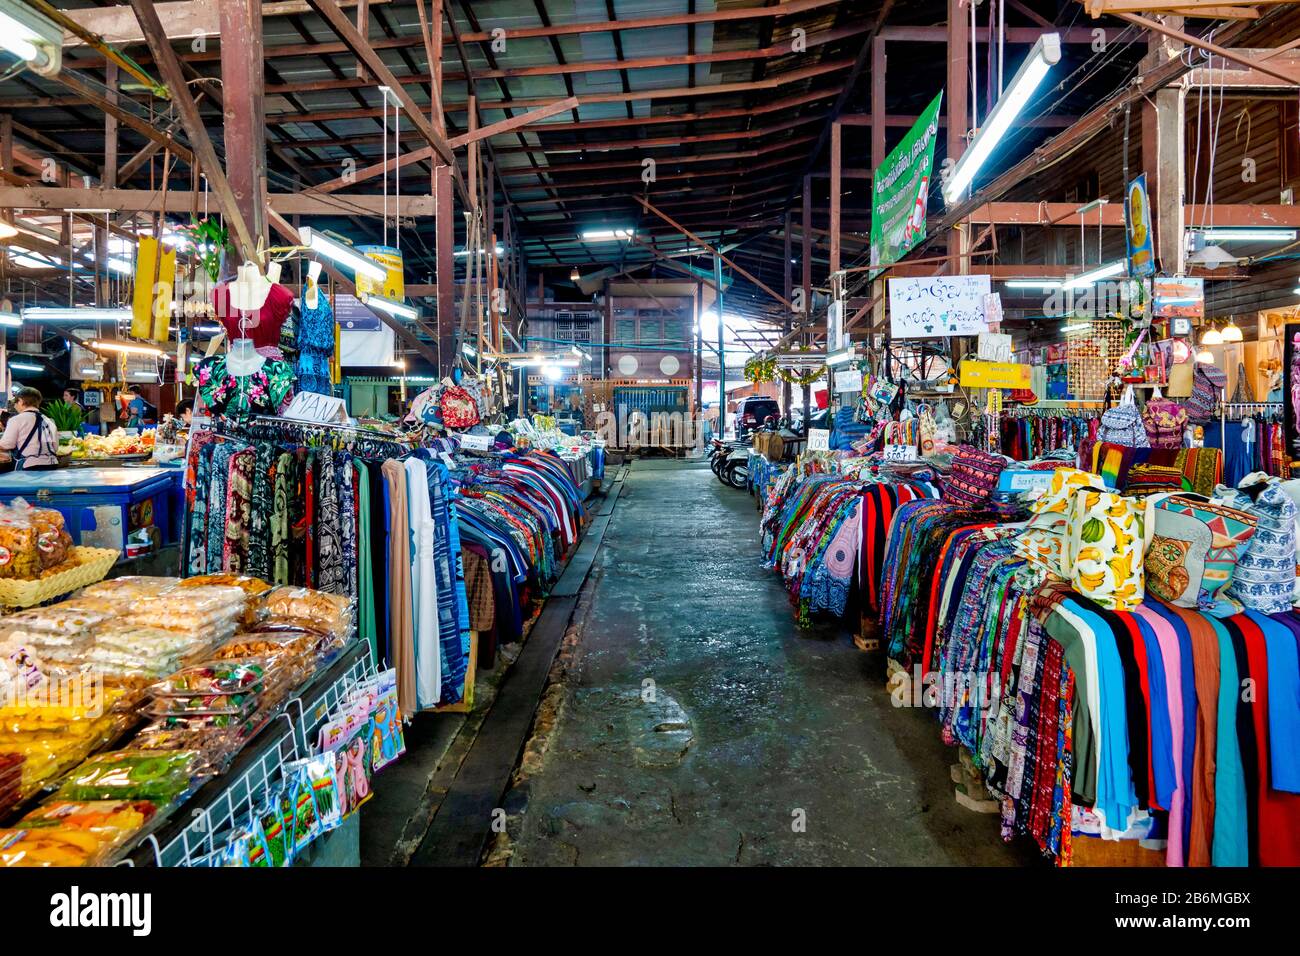 Somphet Market, Chiang Mai, Thailand Stock Photo